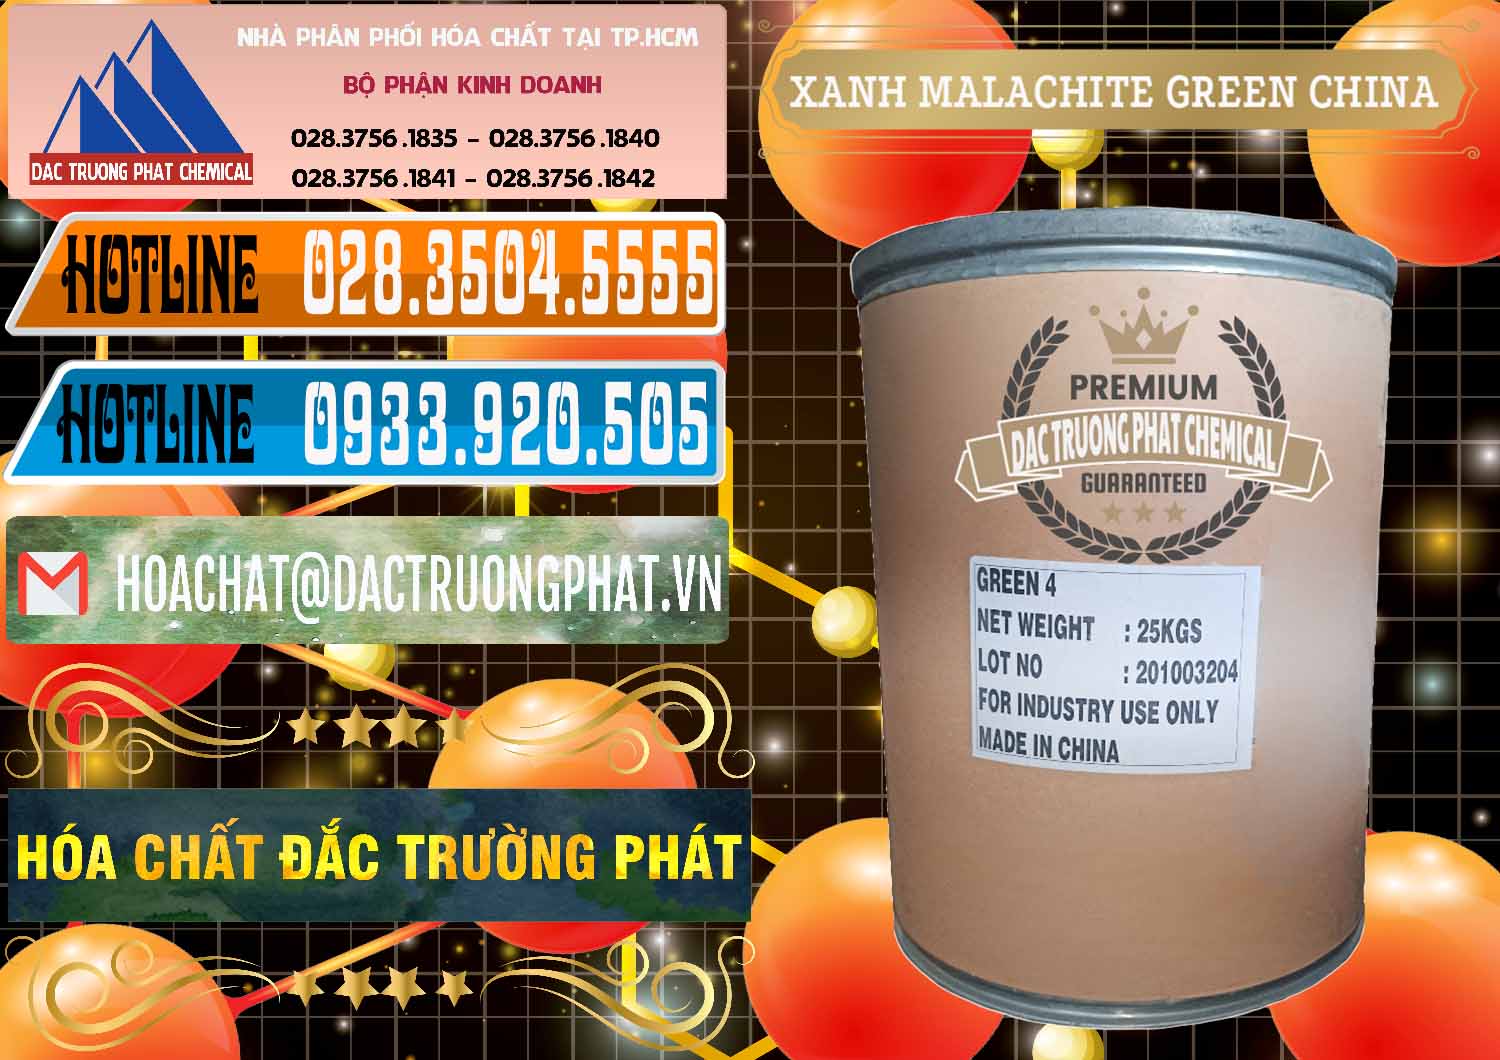 Nơi chuyên bán & phân phối Xanh Malachite Green Trung Quốc China - 0325 - Cty bán và cung cấp hóa chất tại TP.HCM - stmp.net